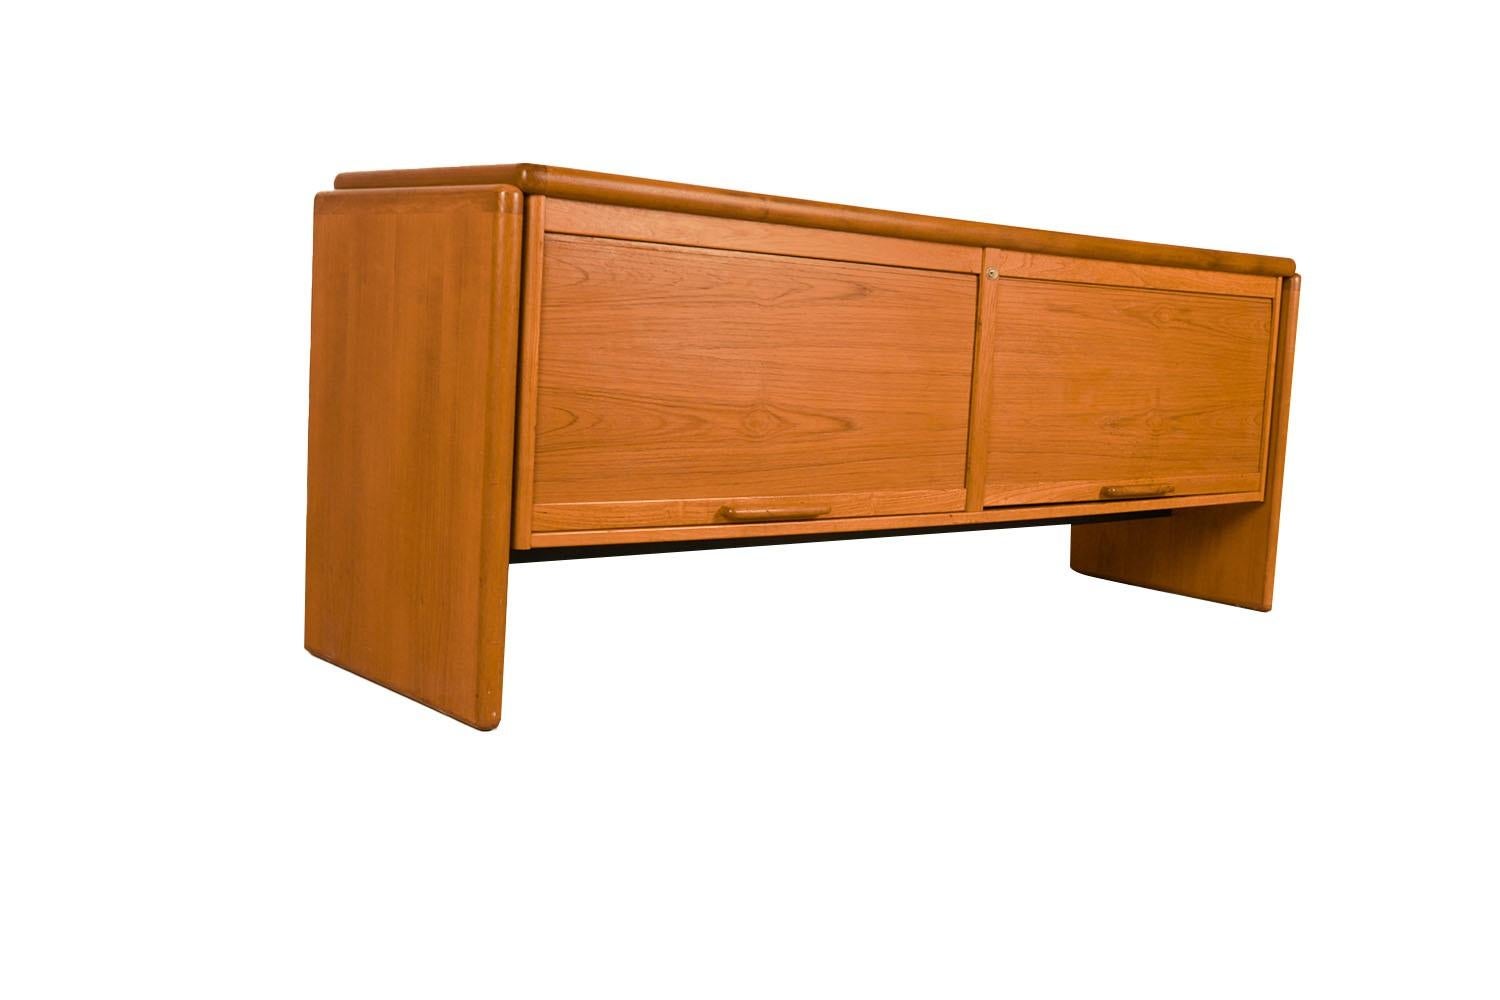 Exceptionnel classeur/crédence en teck, vers les années 1970, fabriqué au Danemark, par Dyrlund. Ce meuble absolument magnifique est doté de deux portes verticales coulissantes qui s'ouvrent pour révéler un intérieur fini avec un grand tiroir